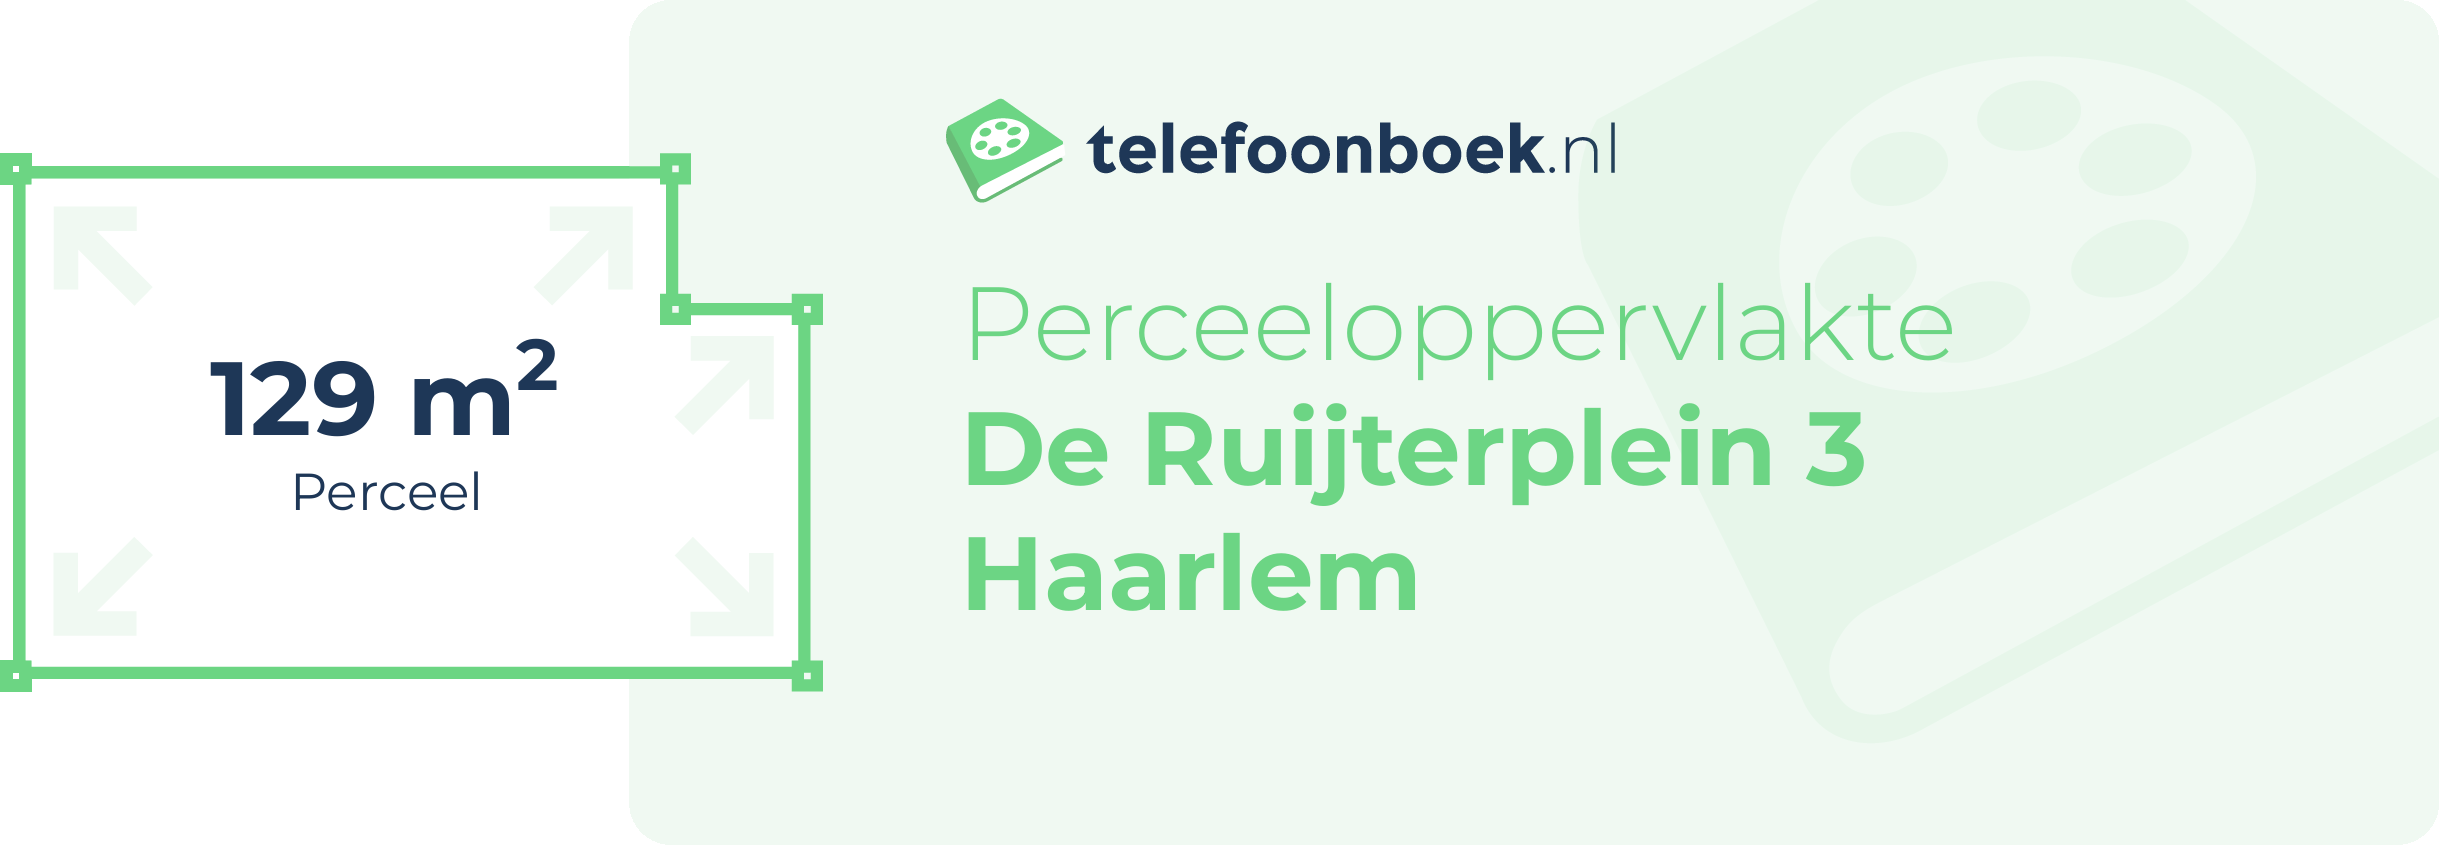 Perceeloppervlakte De Ruijterplein 3 Haarlem